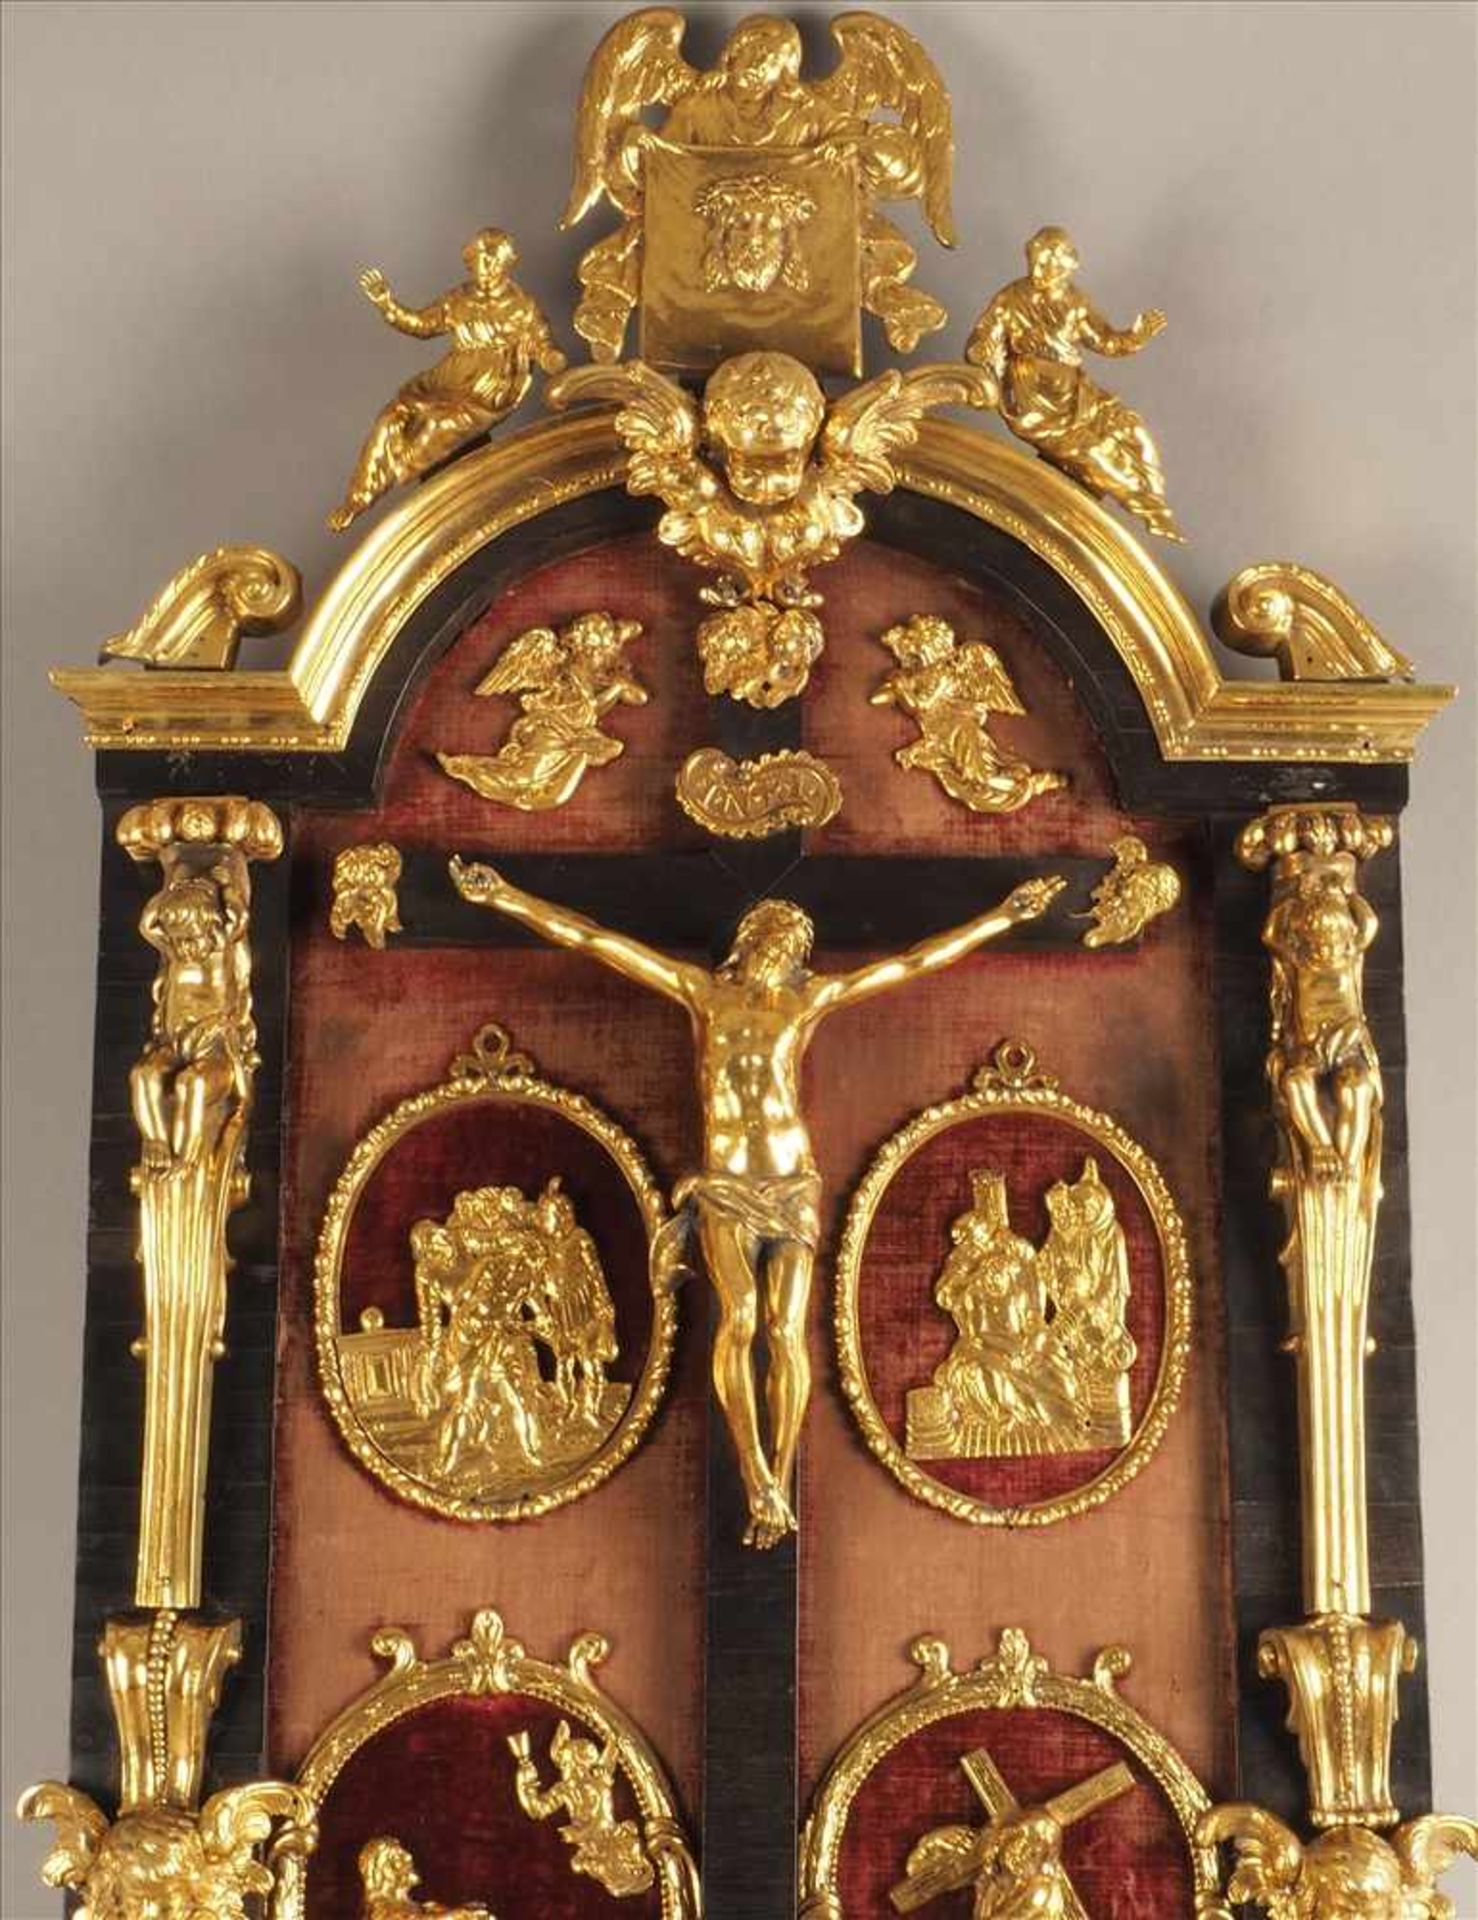 Barocker Hausaltar, Italien 17. Jh.Darstellung der Kreuzigung und Passion Christi, Bronze vergoldet, - Bild 3 aus 5